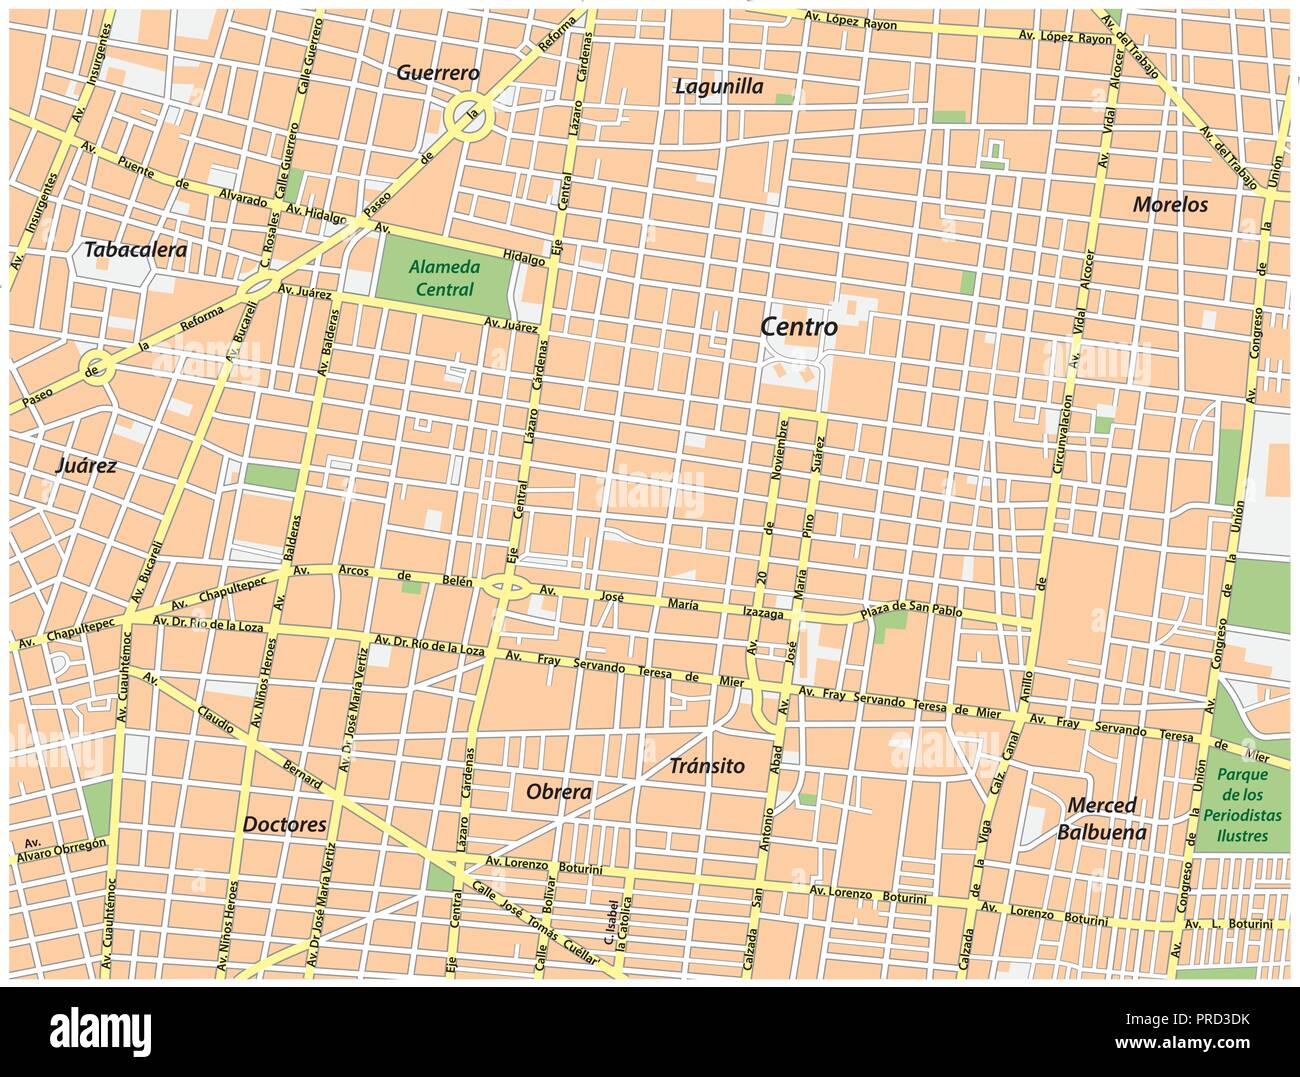 historic center of Mexico City vector street map. Stock Vector